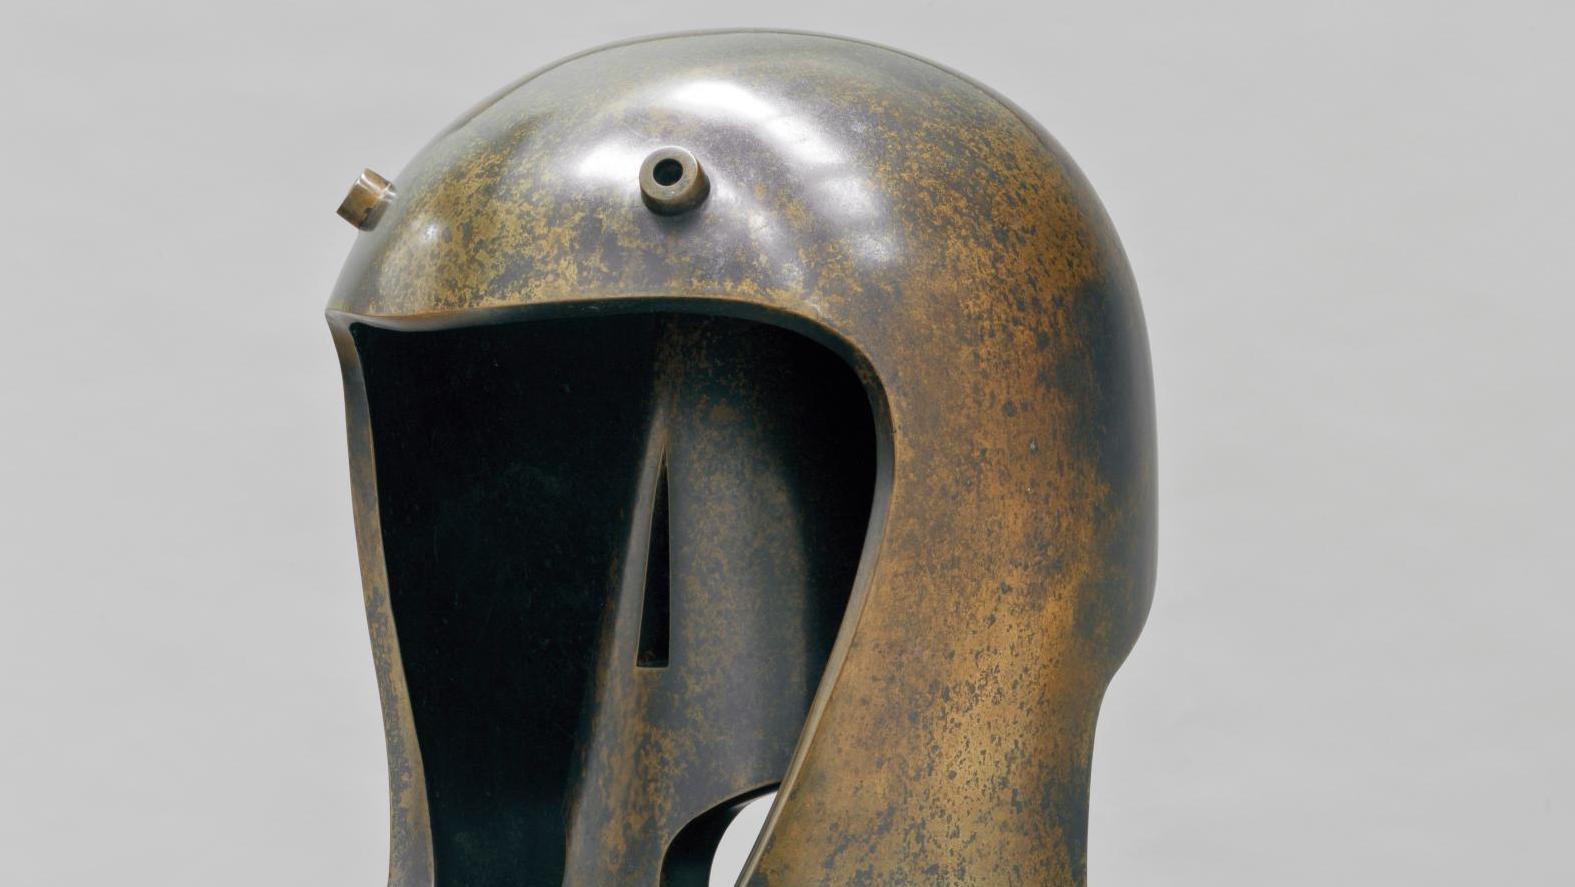 Henry Moore (1898-1986), Helmet Head N° 1, 1950, bronze. Henry Moore : The Helmet Heads